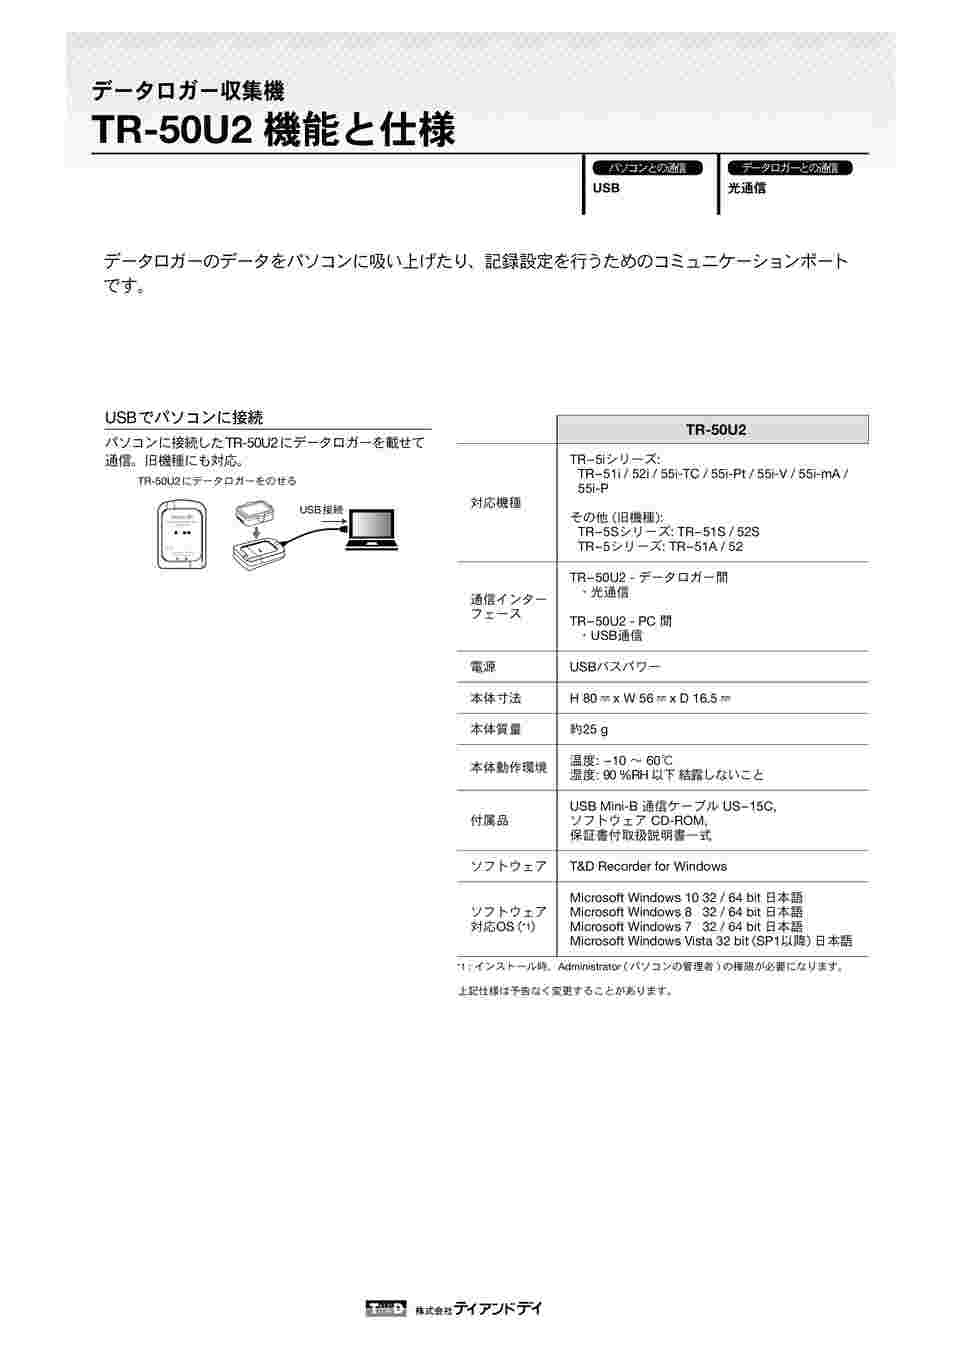 1-5020-22 温度記録計(おんどとりJr.)用USBコミュニケーションポート